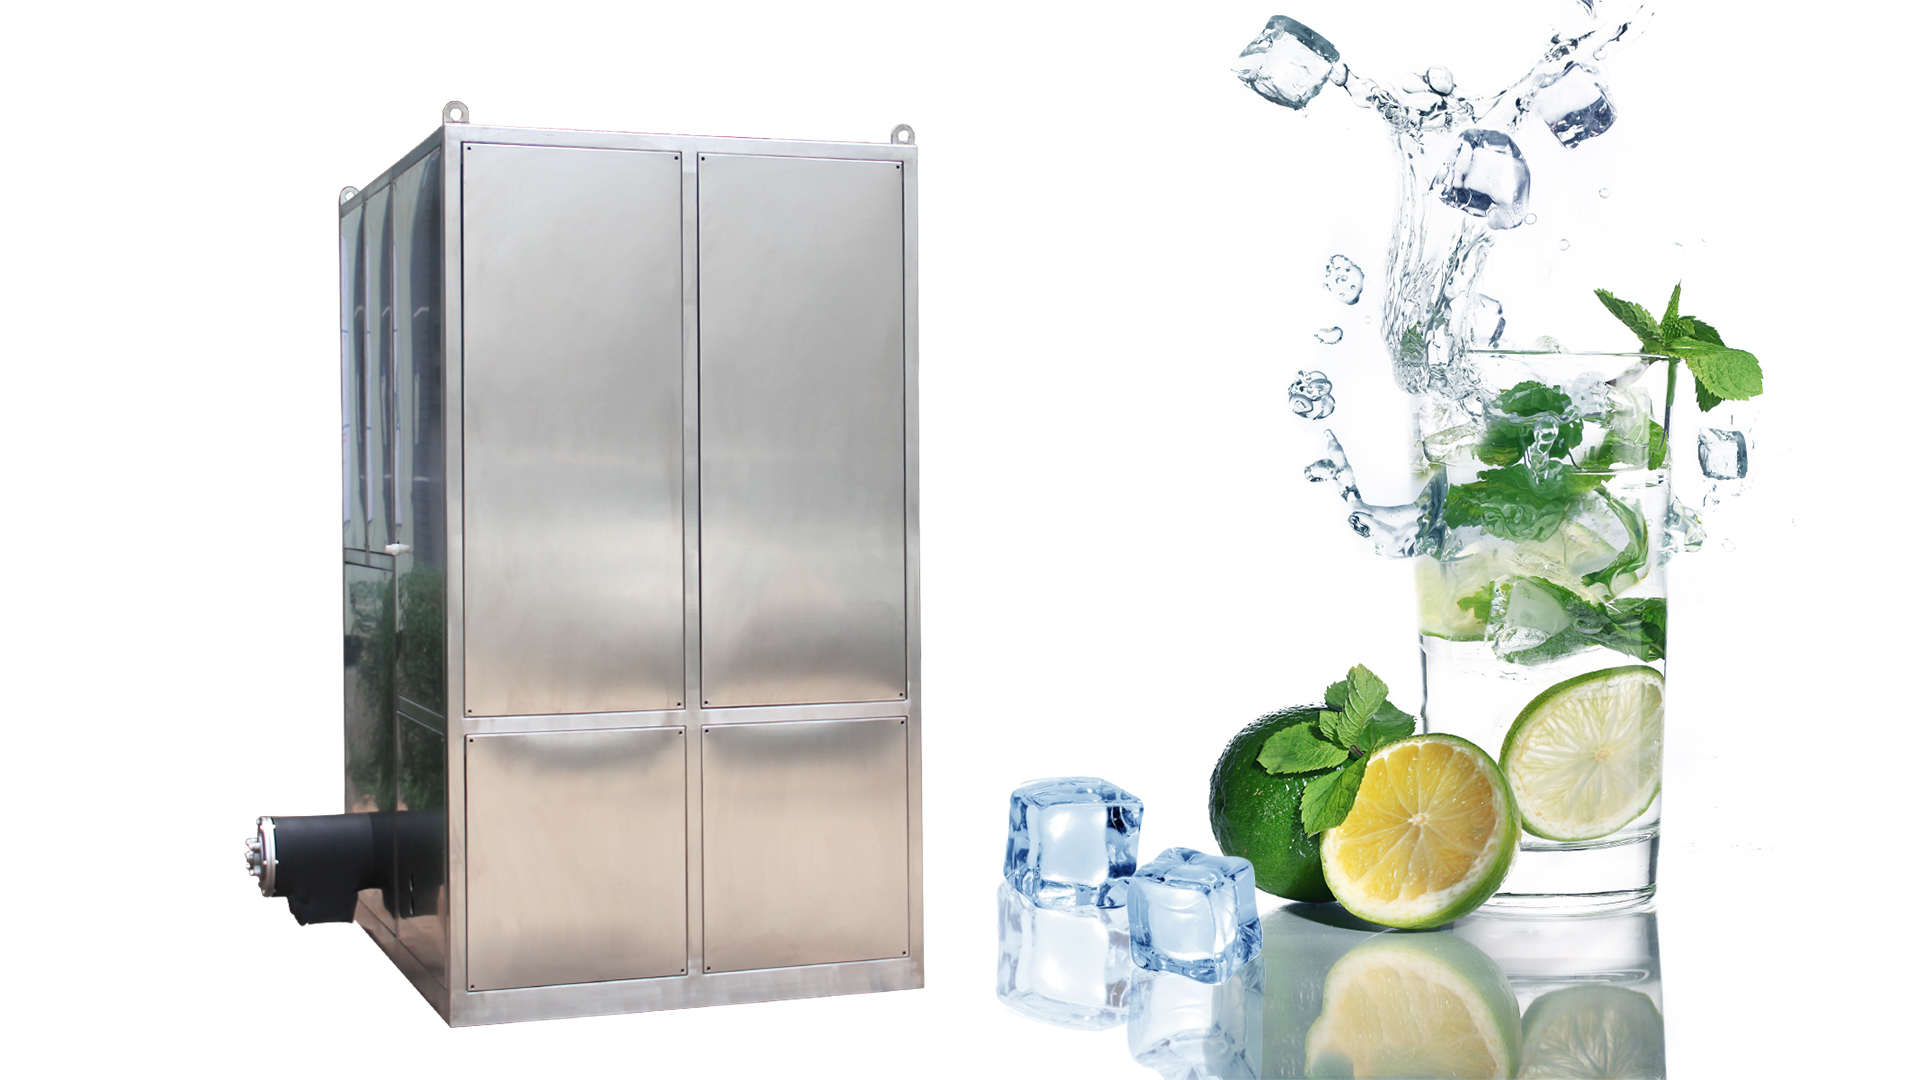 Cube Ice Machine Croisement à eau haute productivité 1 tonne / jour Produit chaud personnalisé dans ICESTA 8000 $ - 12000 $